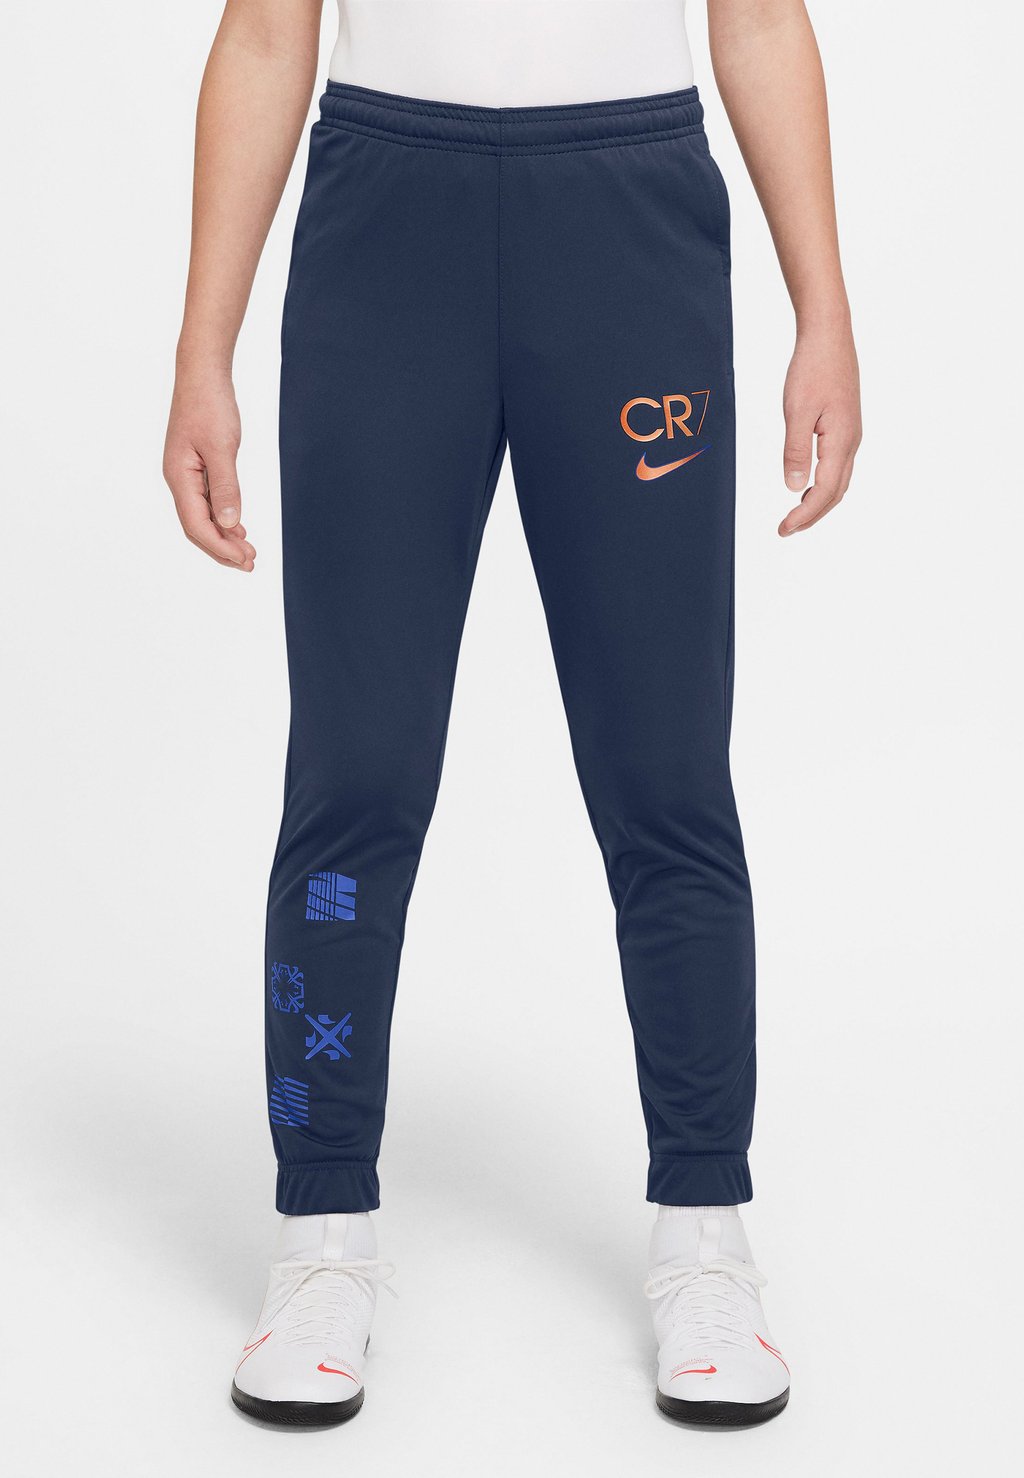 Спортивные брюки CR7 DRY PANT Nike Performance, темно-синий nike венчурный бегун nike темно синий